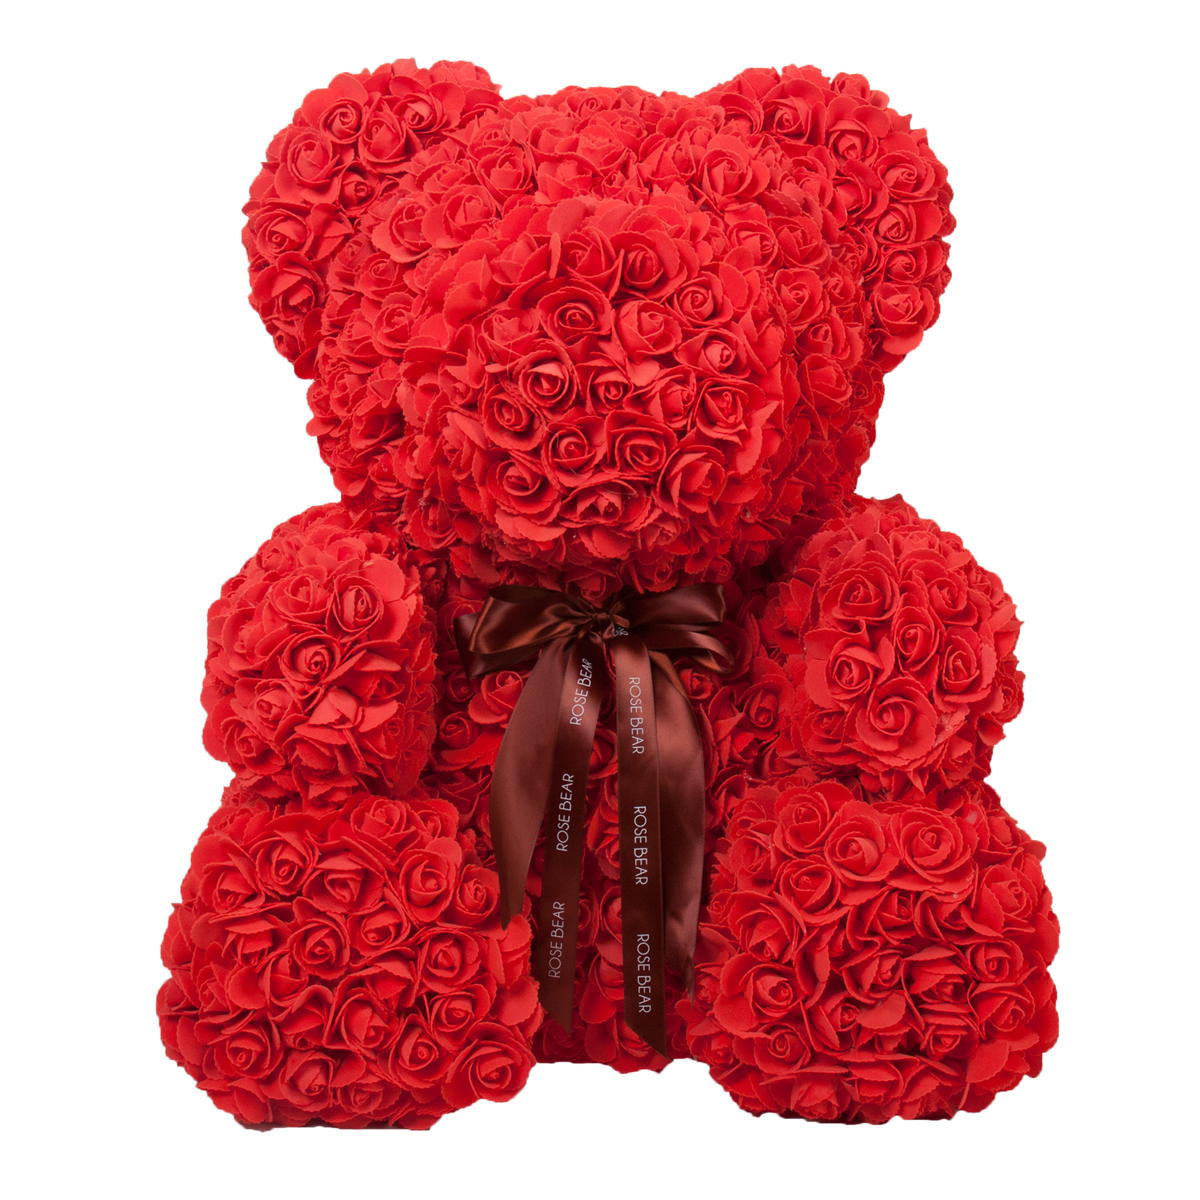 rose covered bear